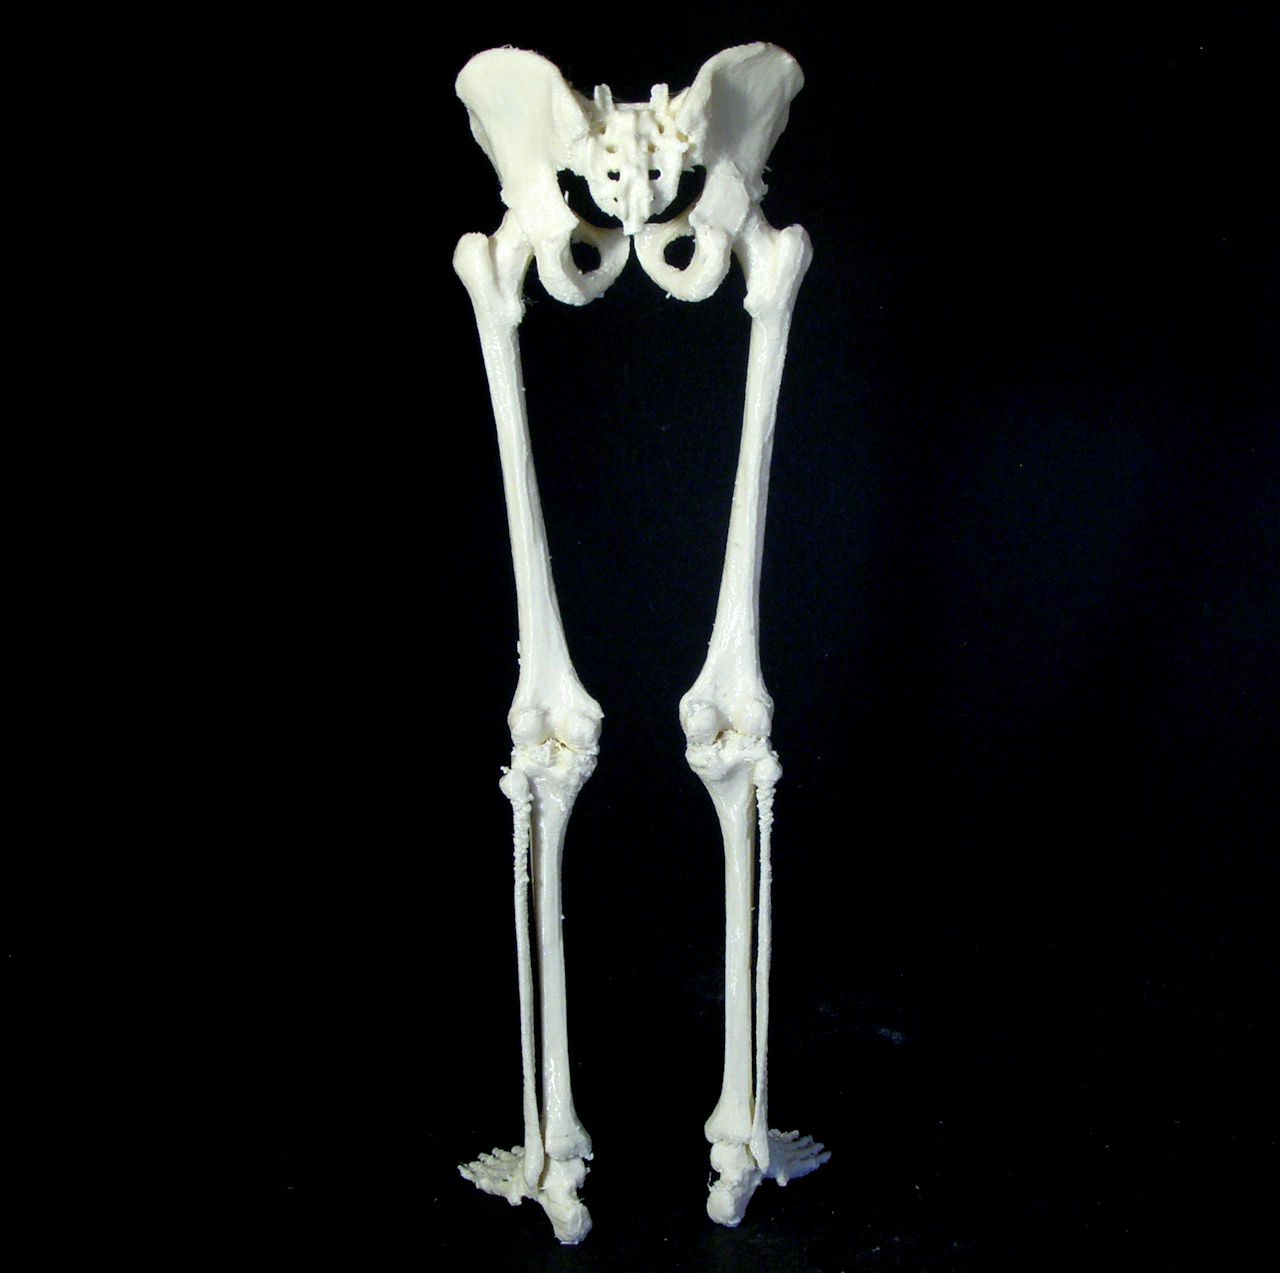 Human skeleton image